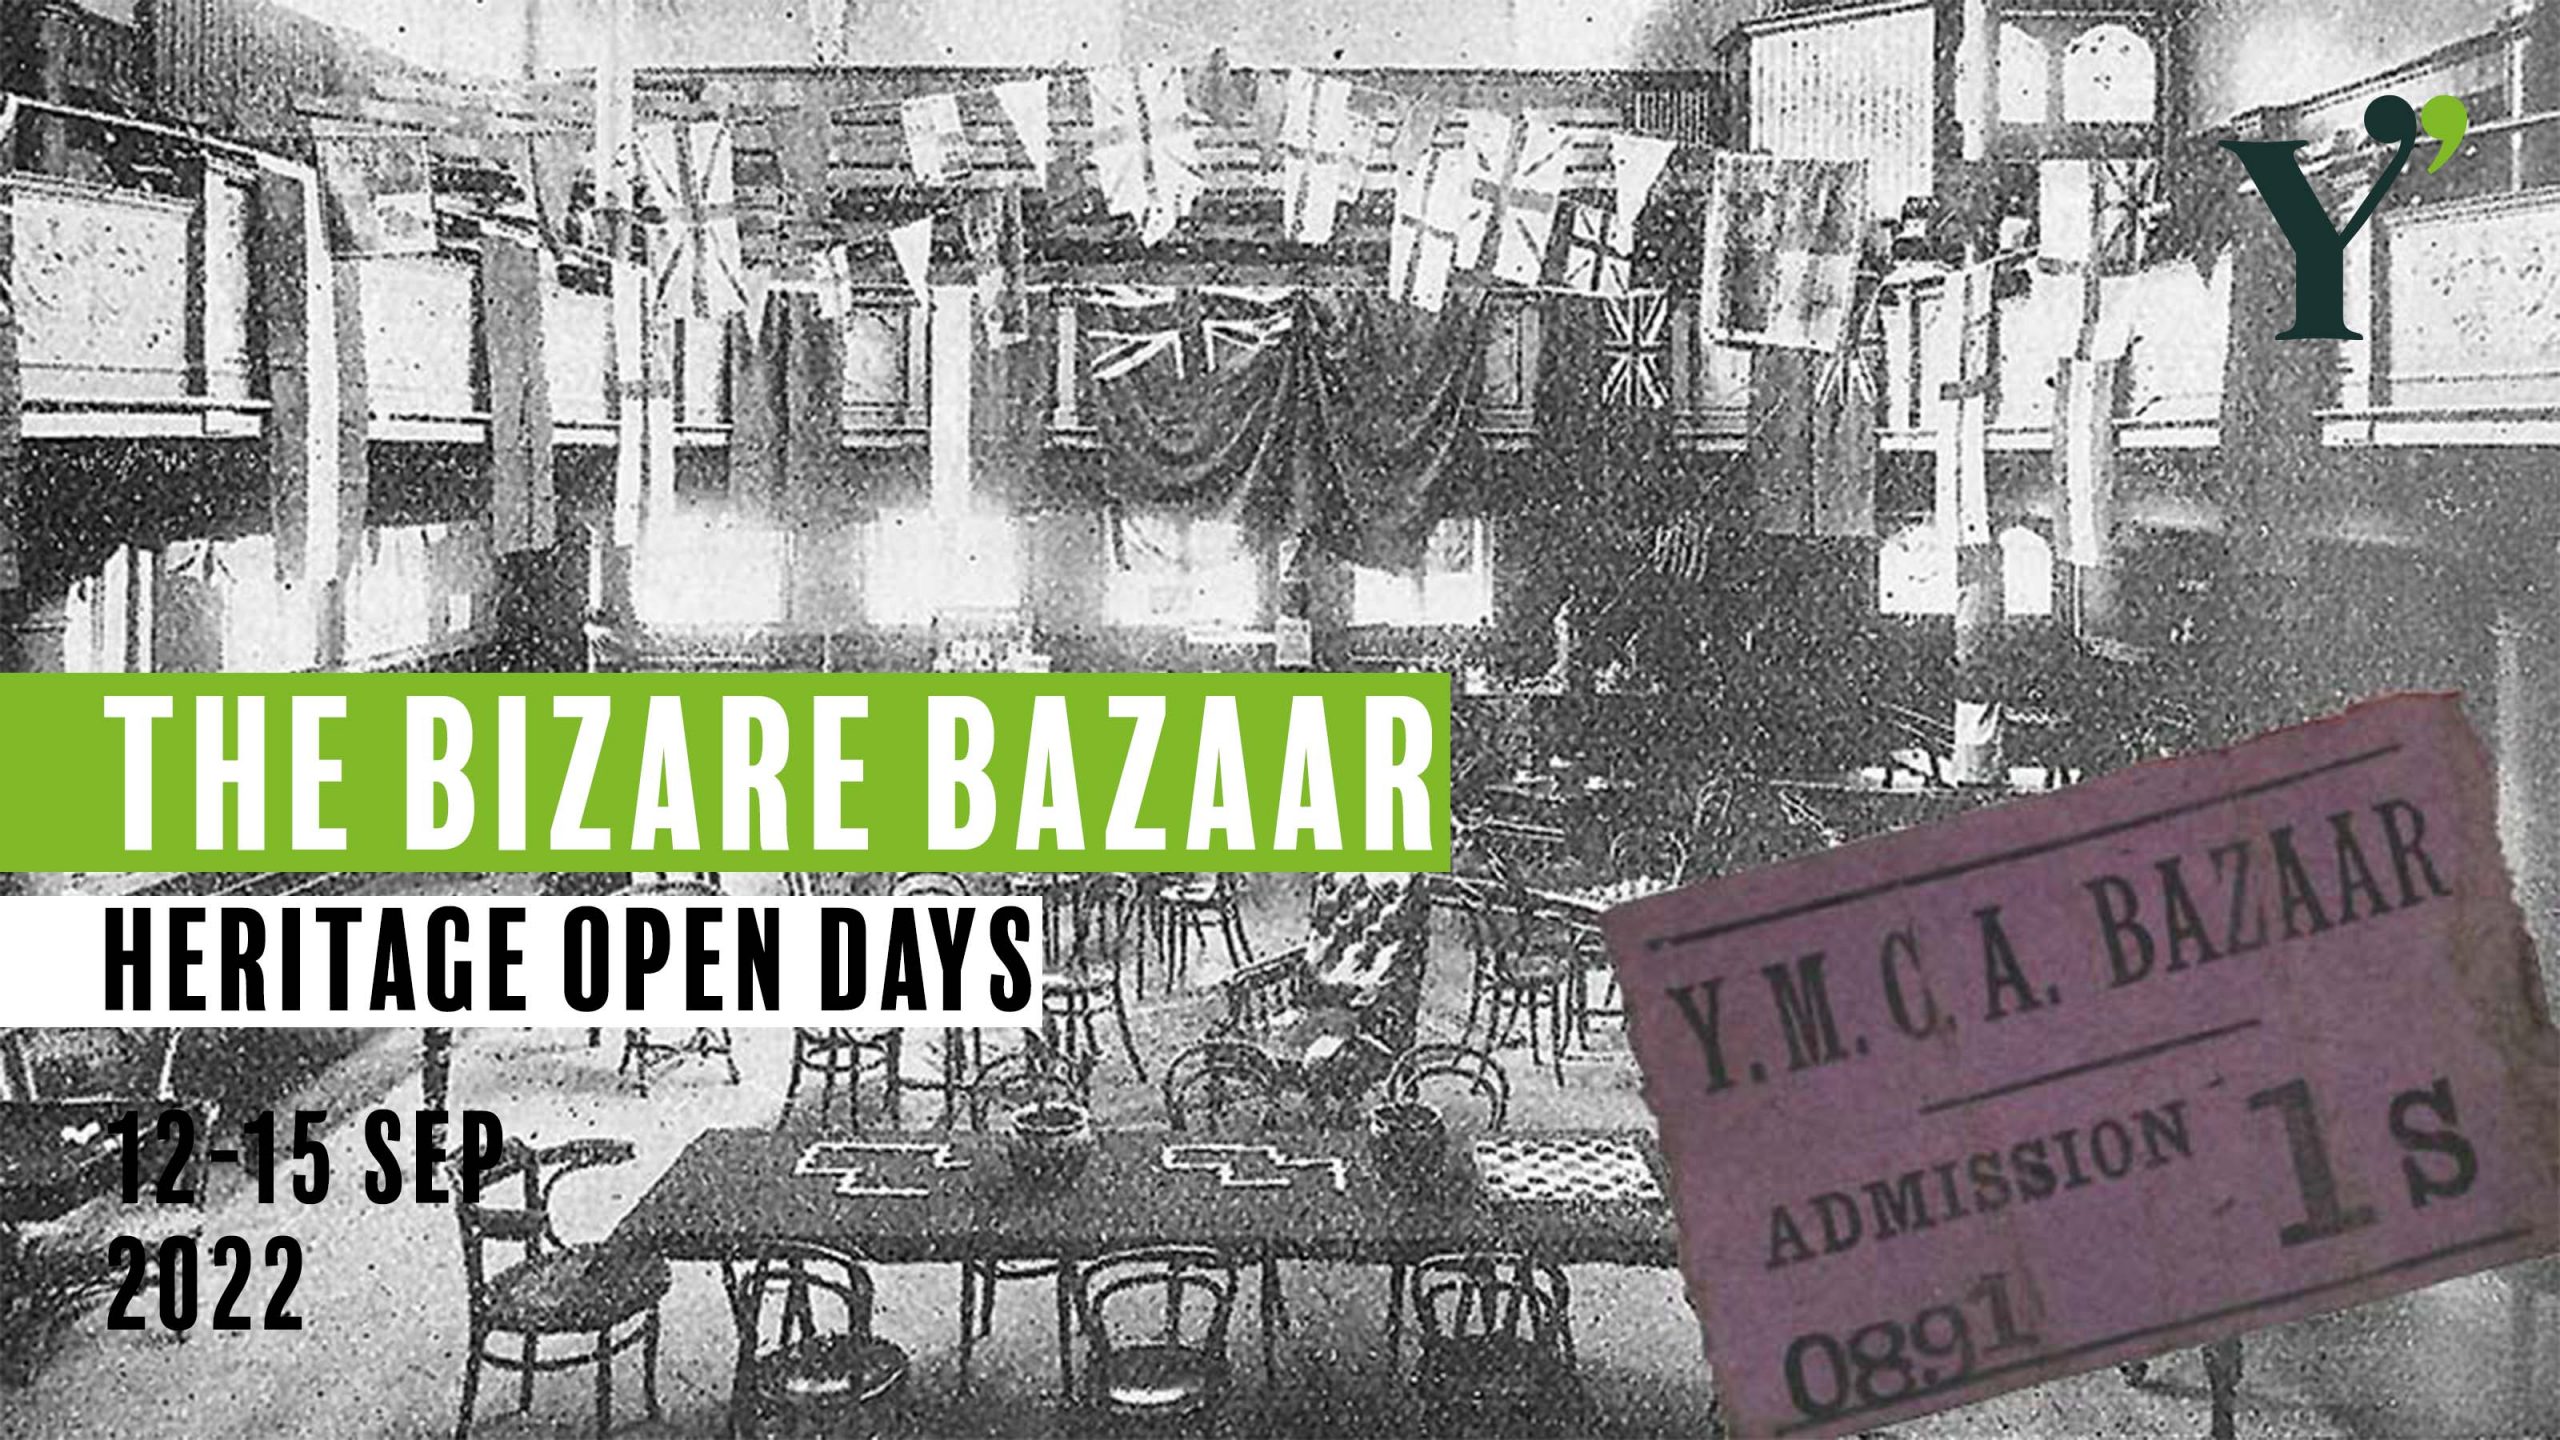 Young People help run the Bizarre Bazaar